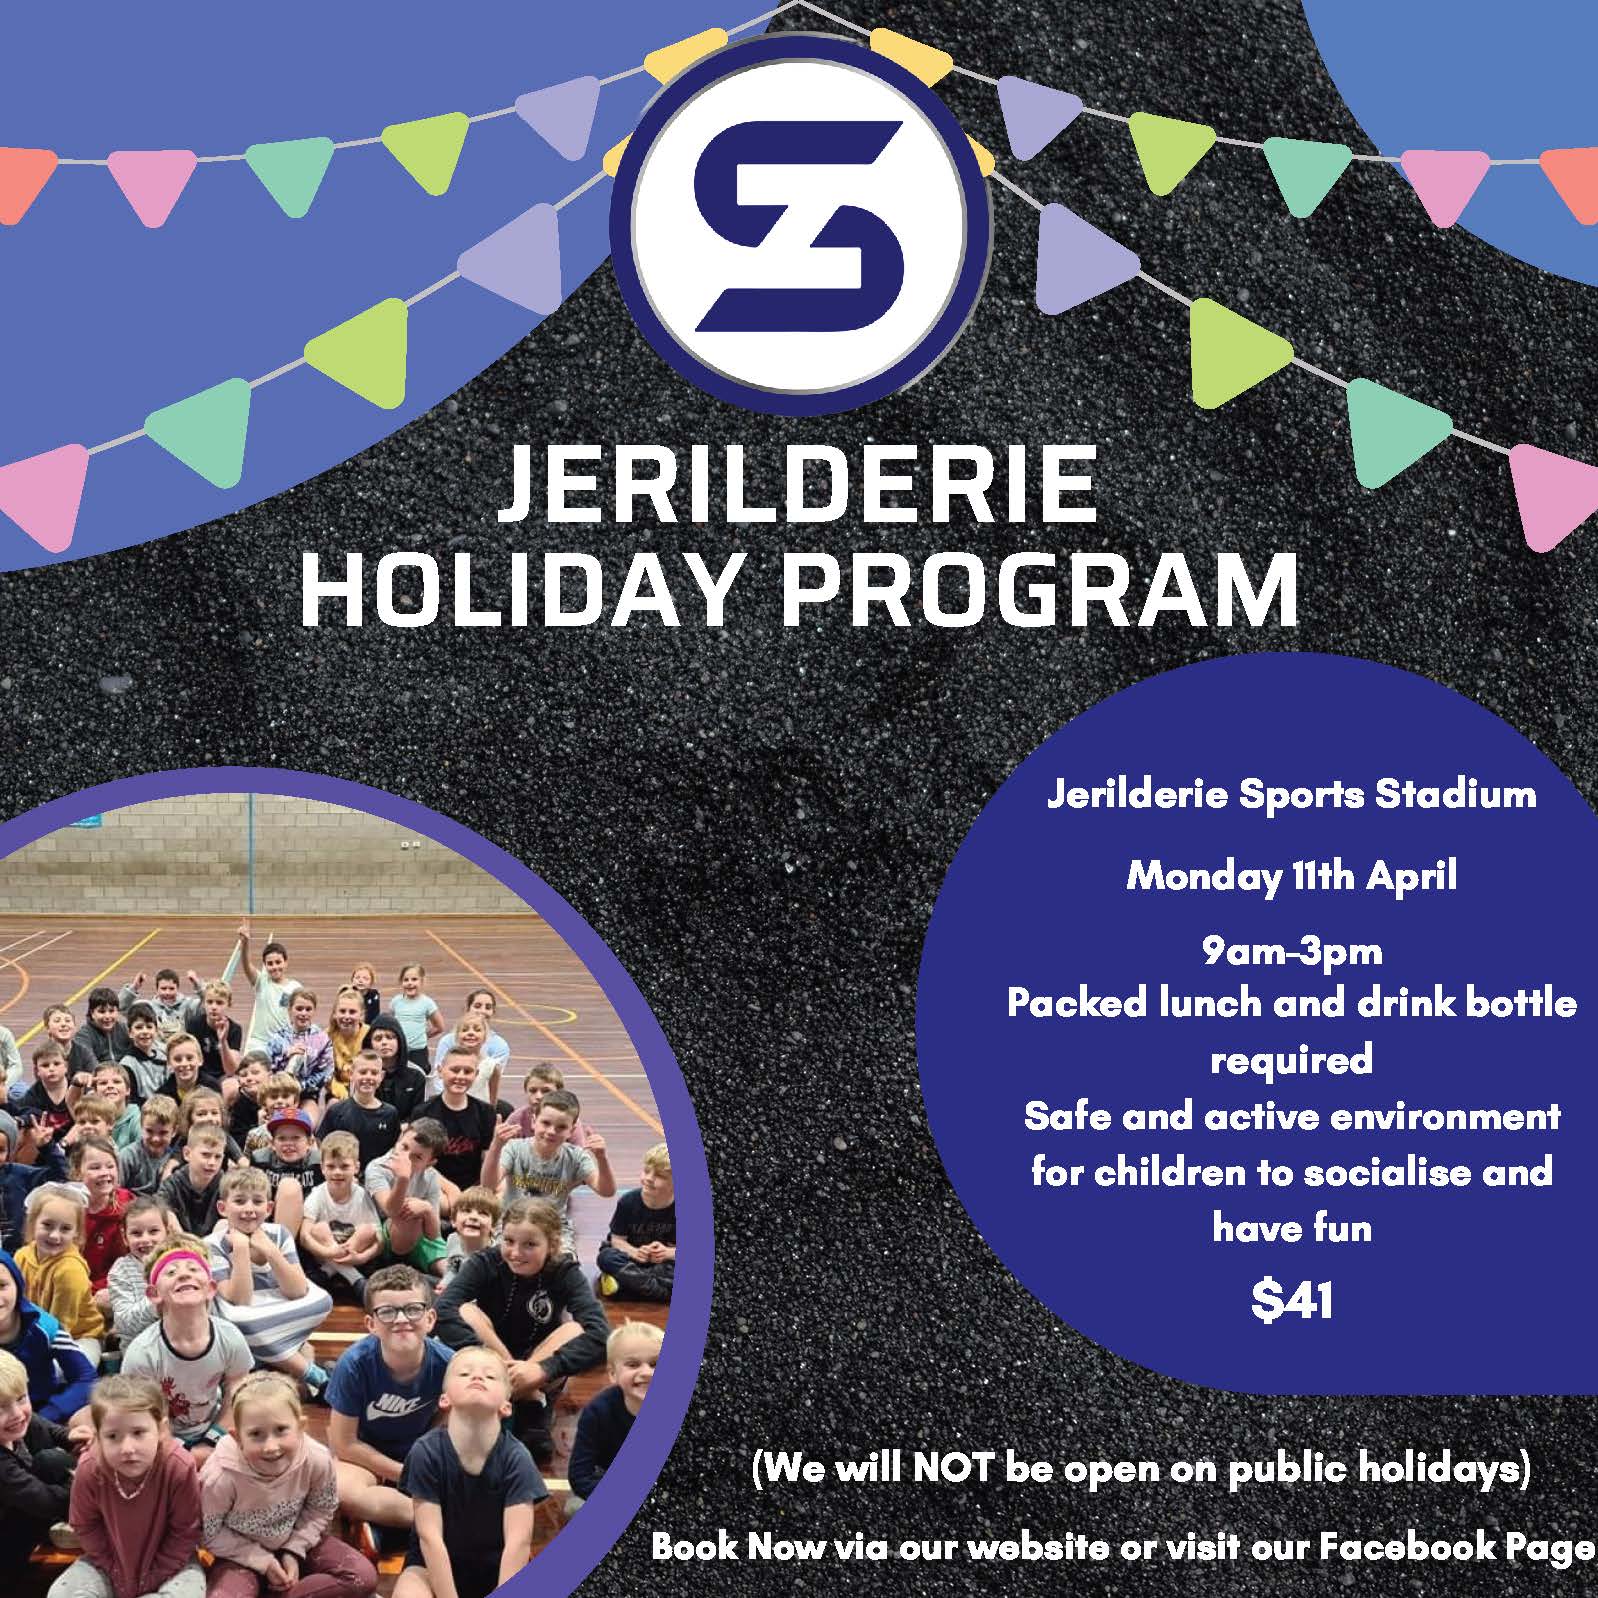 Jerilderie Holiday Program - Skillzone Sports